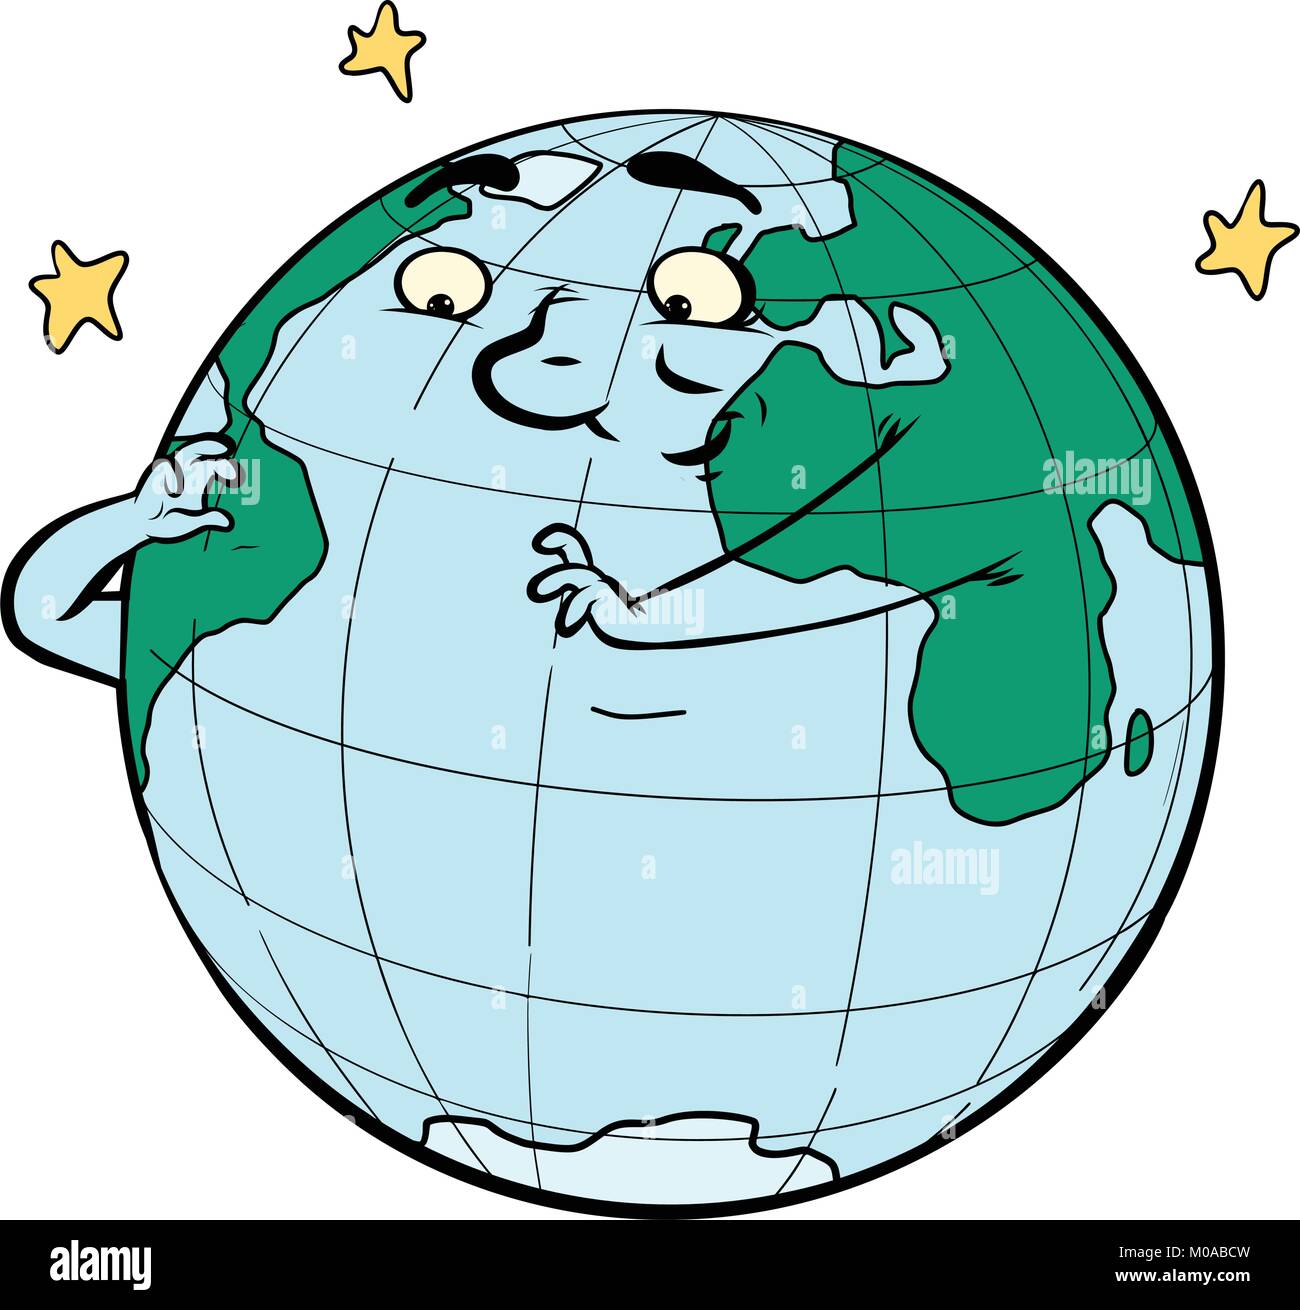 Planete Terre De Caractere Pense L Ecologie Et L Environnement Bande Dessinee Caricature Dessin Illustration Retro Pop Art Image Vectorielle Stock Alamy